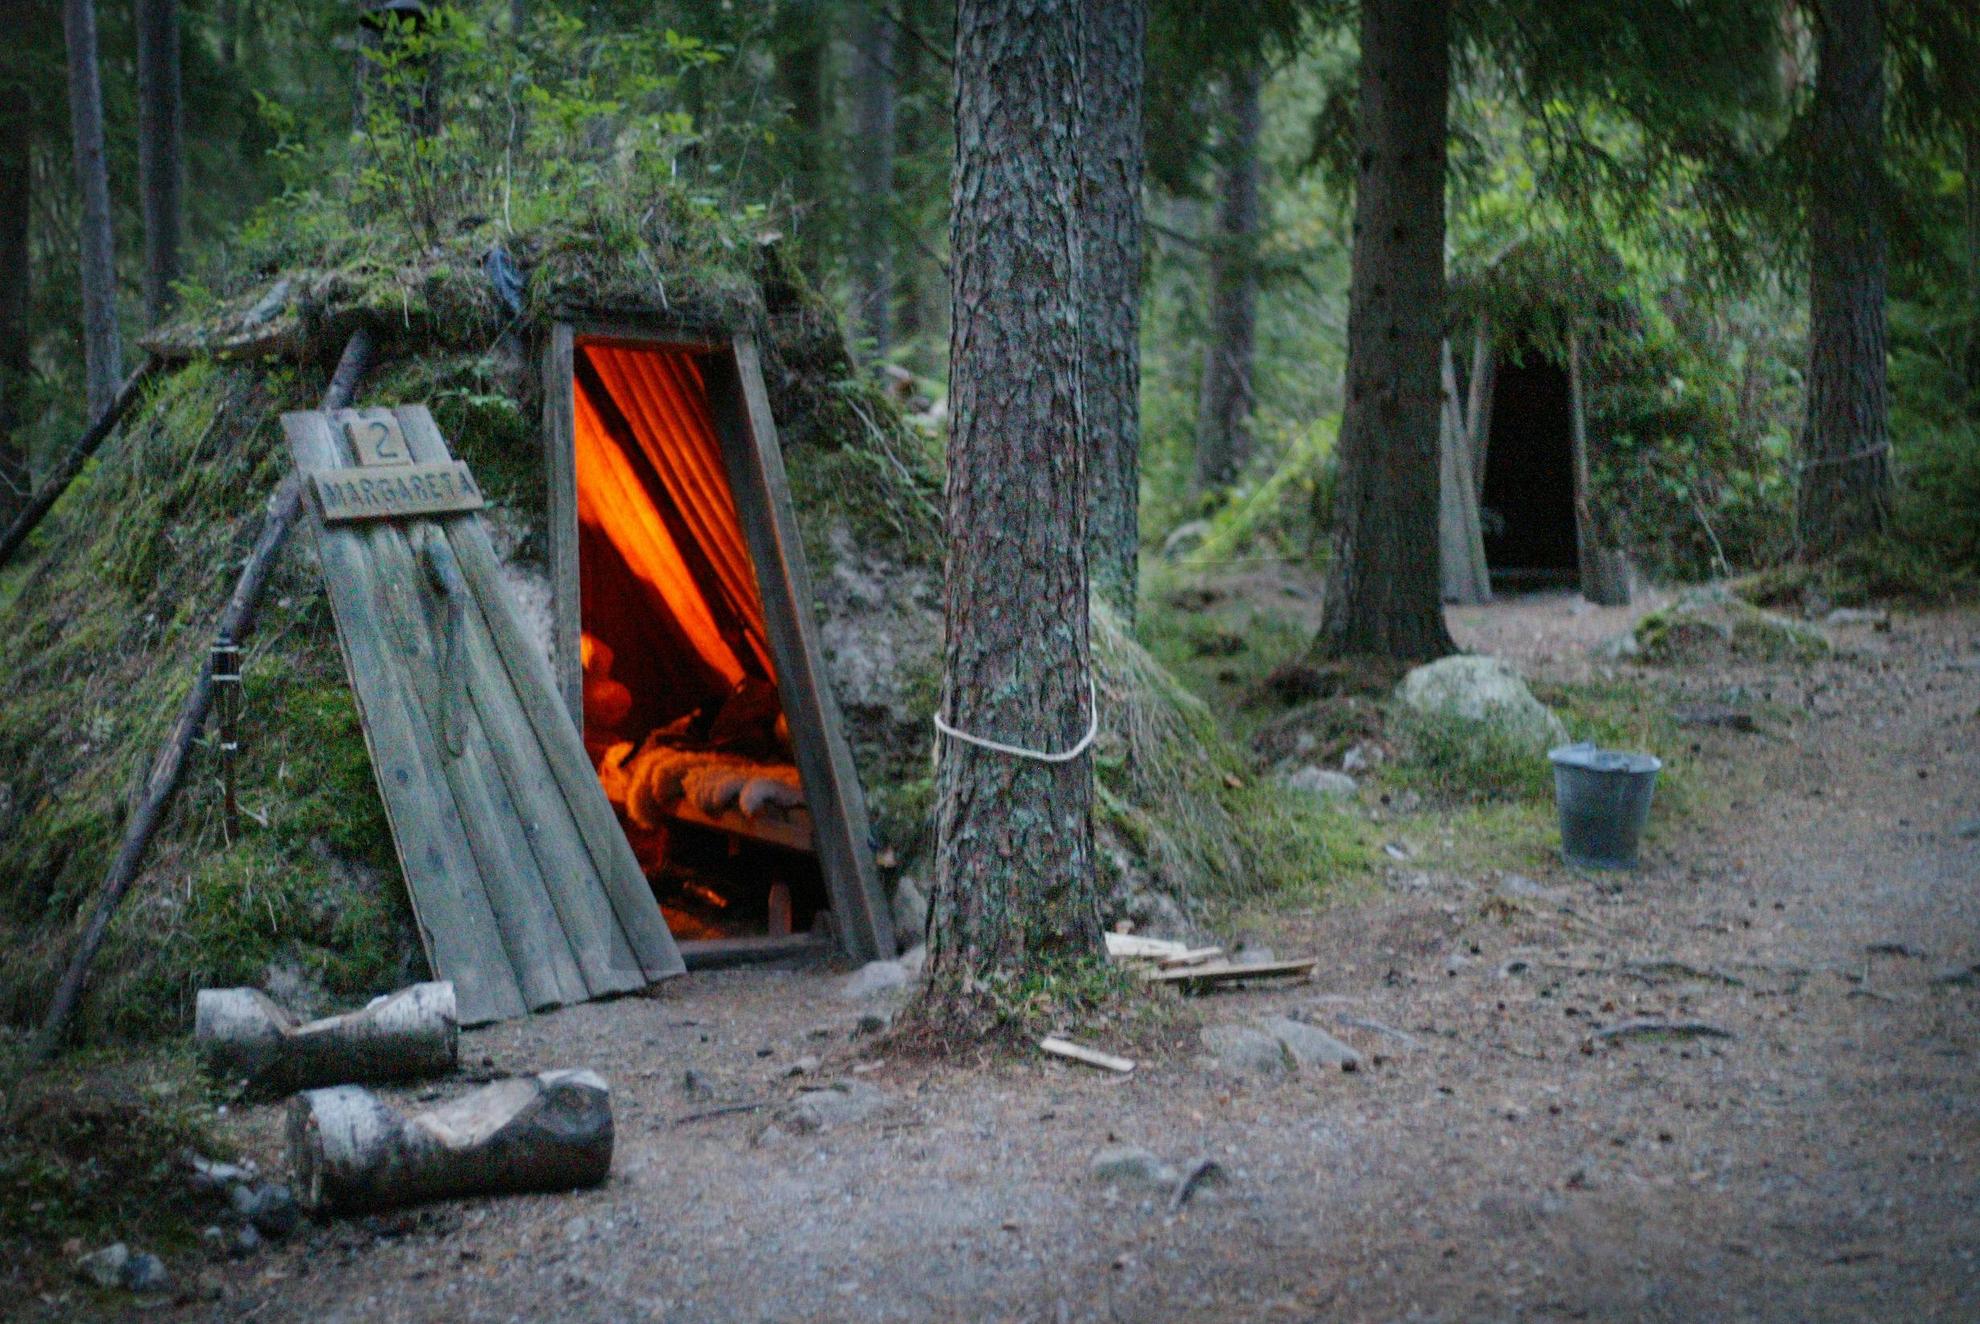 Twee boshutten bedekt met mos gelegen in een bos. In een van de hutten brandt een open haard.